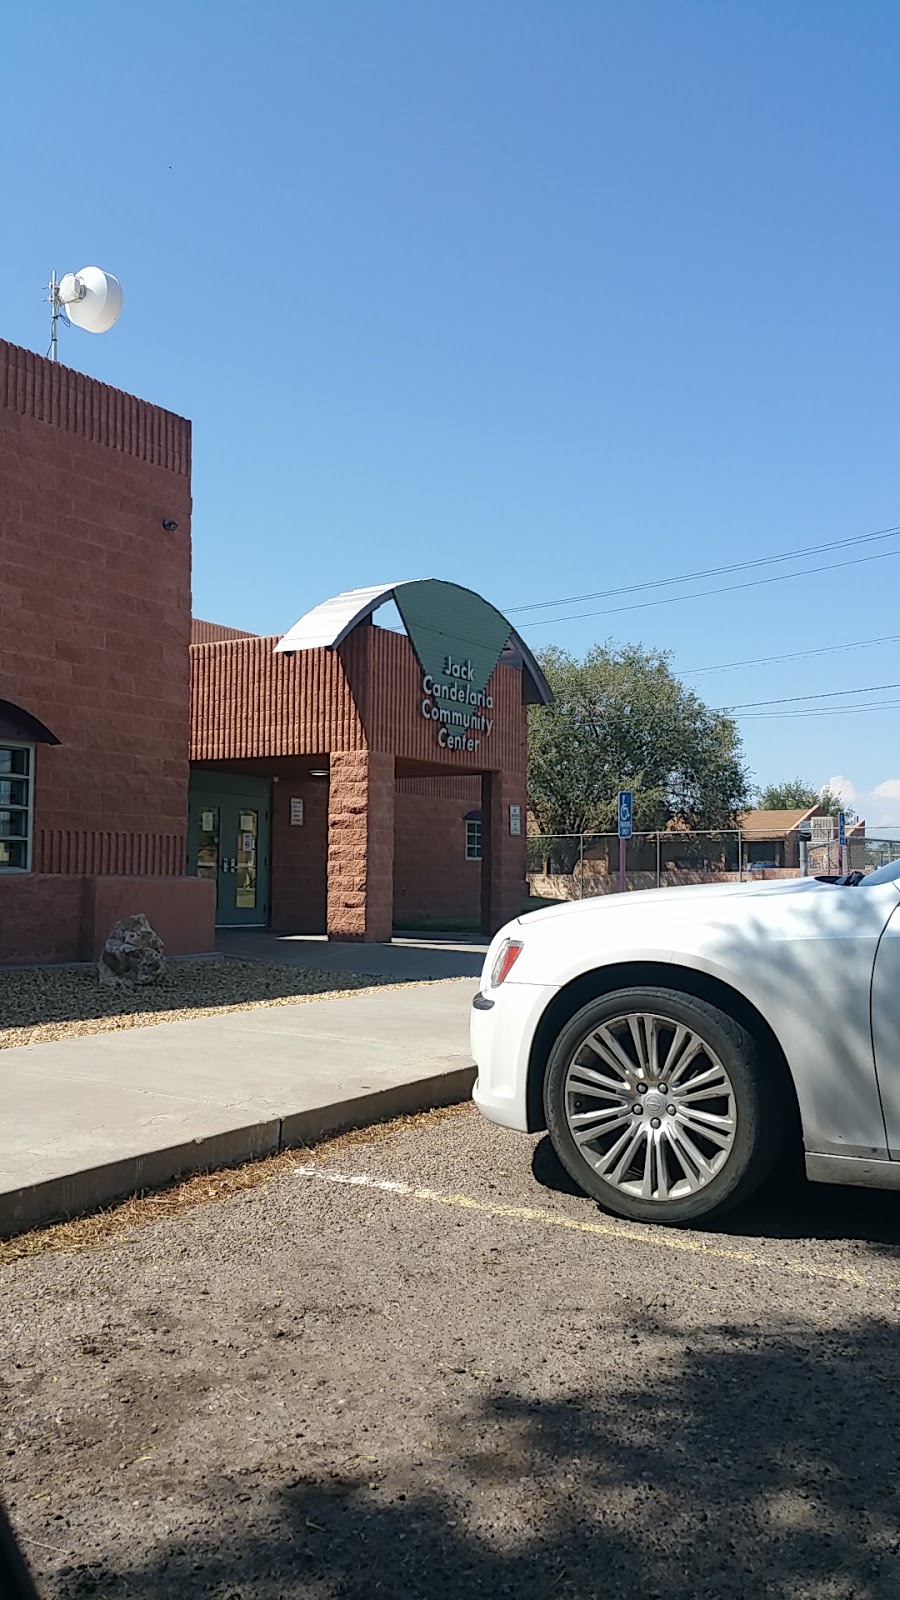 Jack Candelaria Community Center | 400 San Jose Ave SE, Albuquerque, NM 87102 | Phone: (505) 848-1324